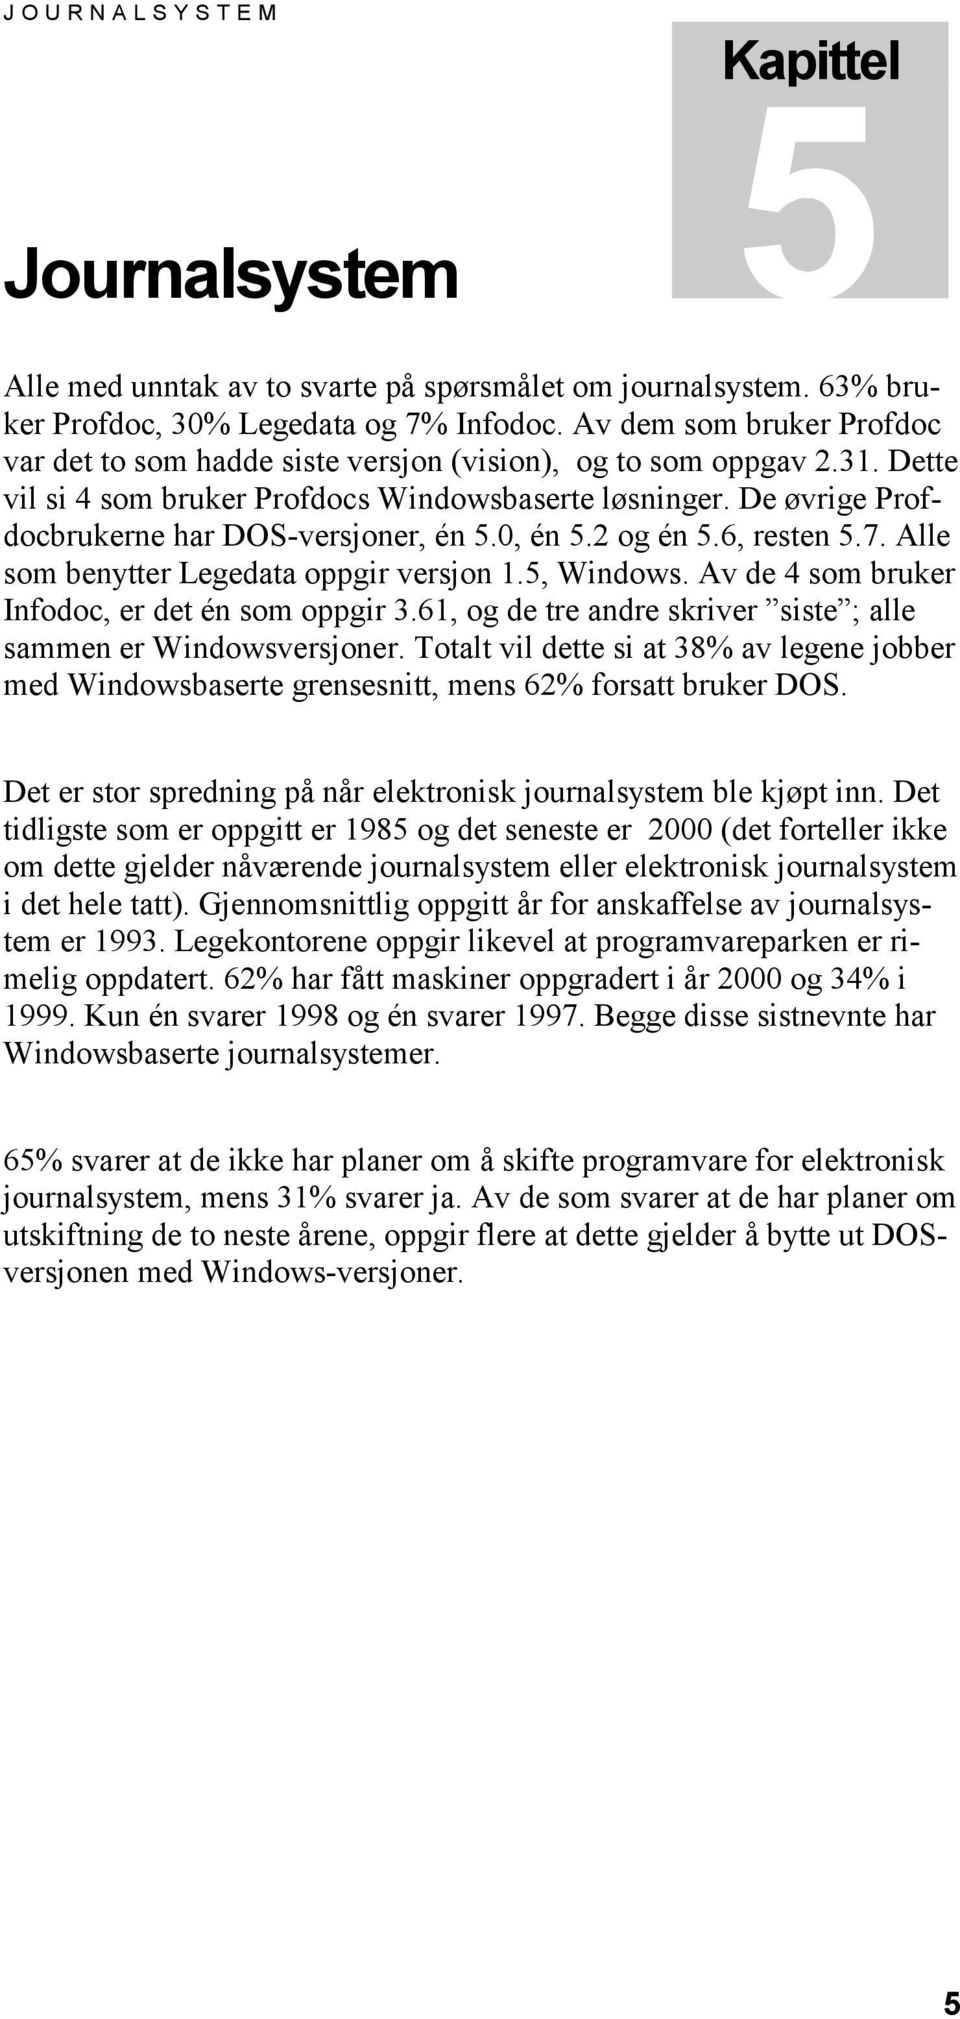 De øvrige Profdocbrukerne har DOS-versjoner, én 5.0, én 5.2 og én 5.6, resten 5.7. Alle som benytter Legedata oppgir versjon 1.5, Windows. Av de 4 som bruker Infodoc, er det én som oppgir 3.